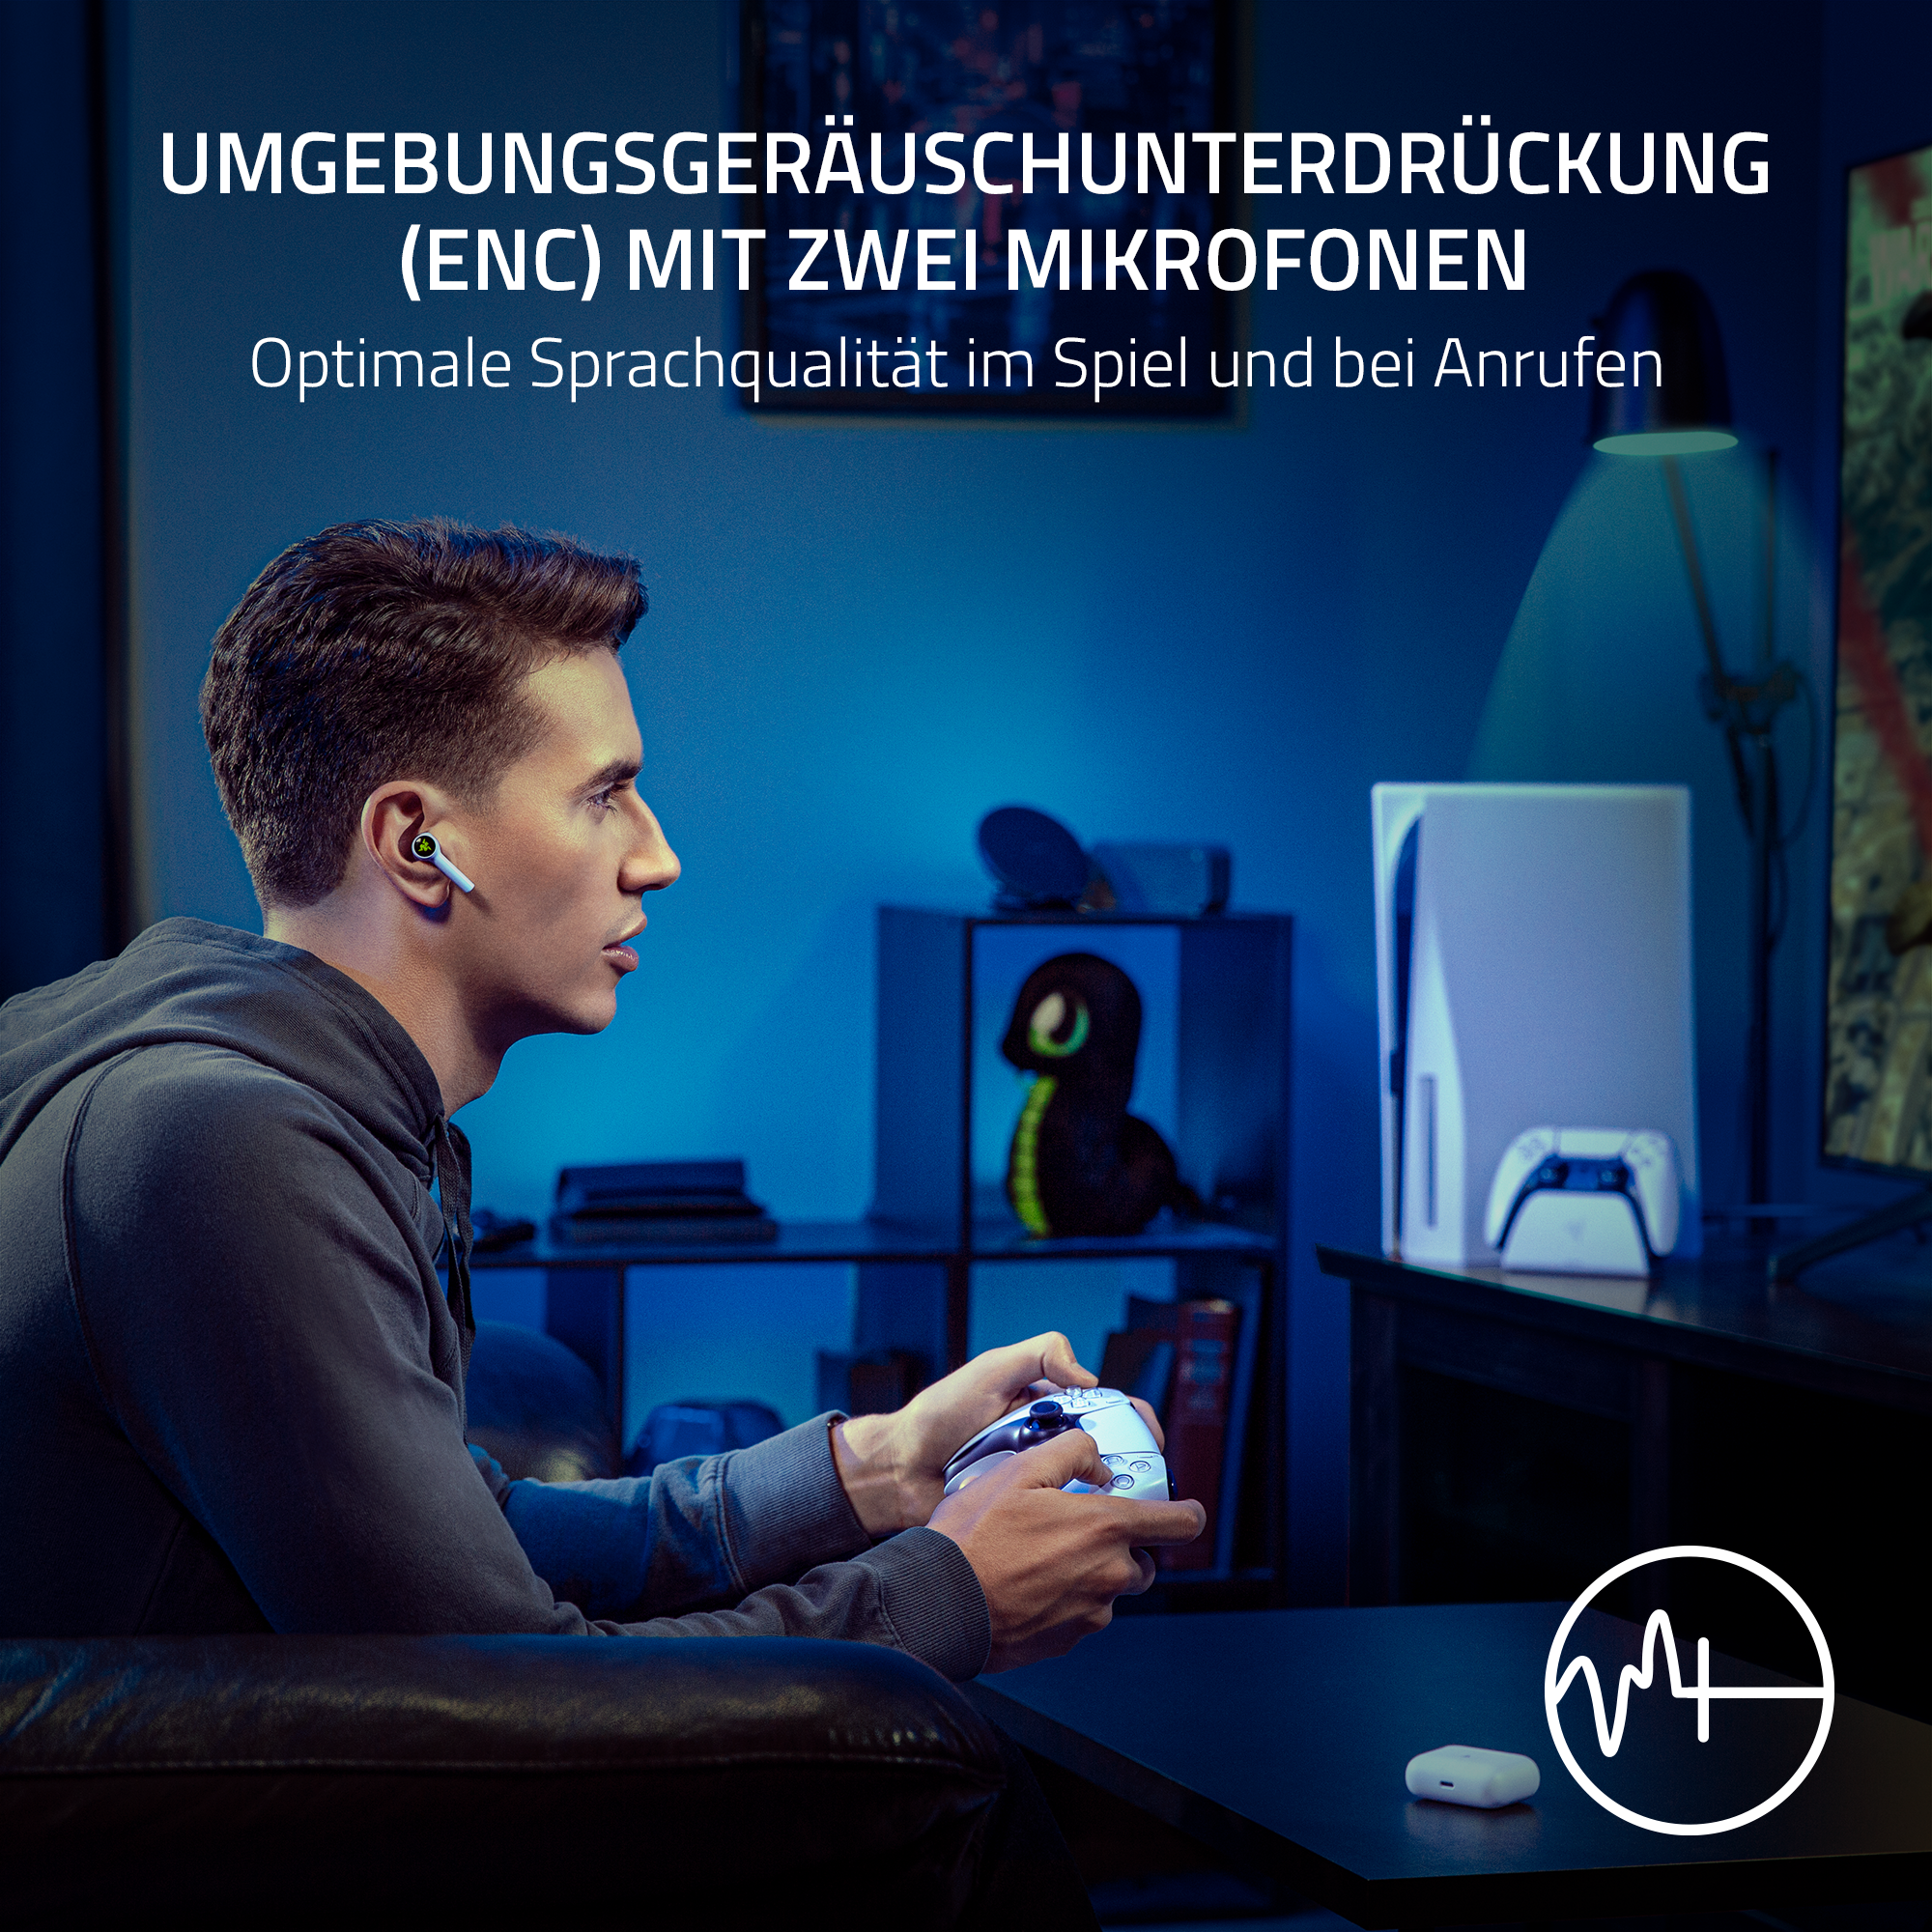 RAZER Hammerhead HyperSpeed für PlayStation Weiß, In-ear Weiß Headset - Gaming